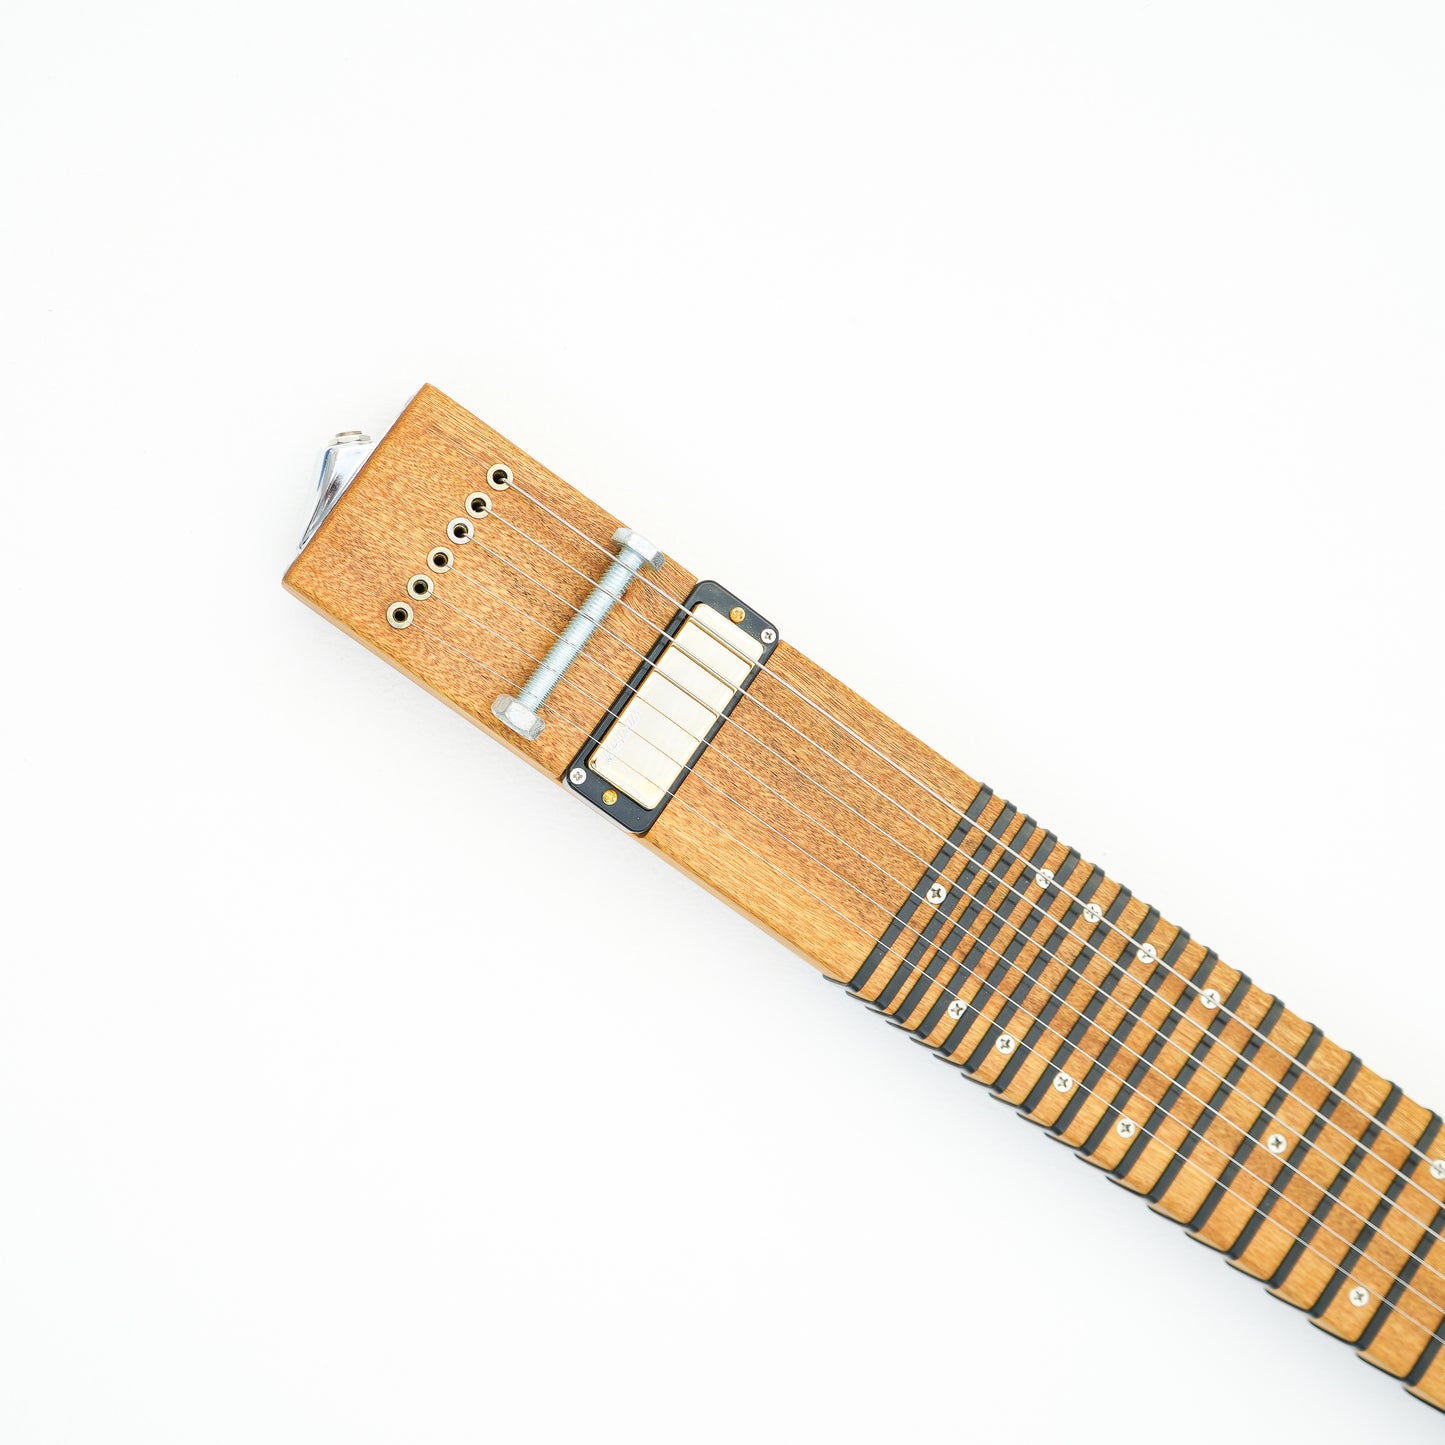 Lap Slide Guitar